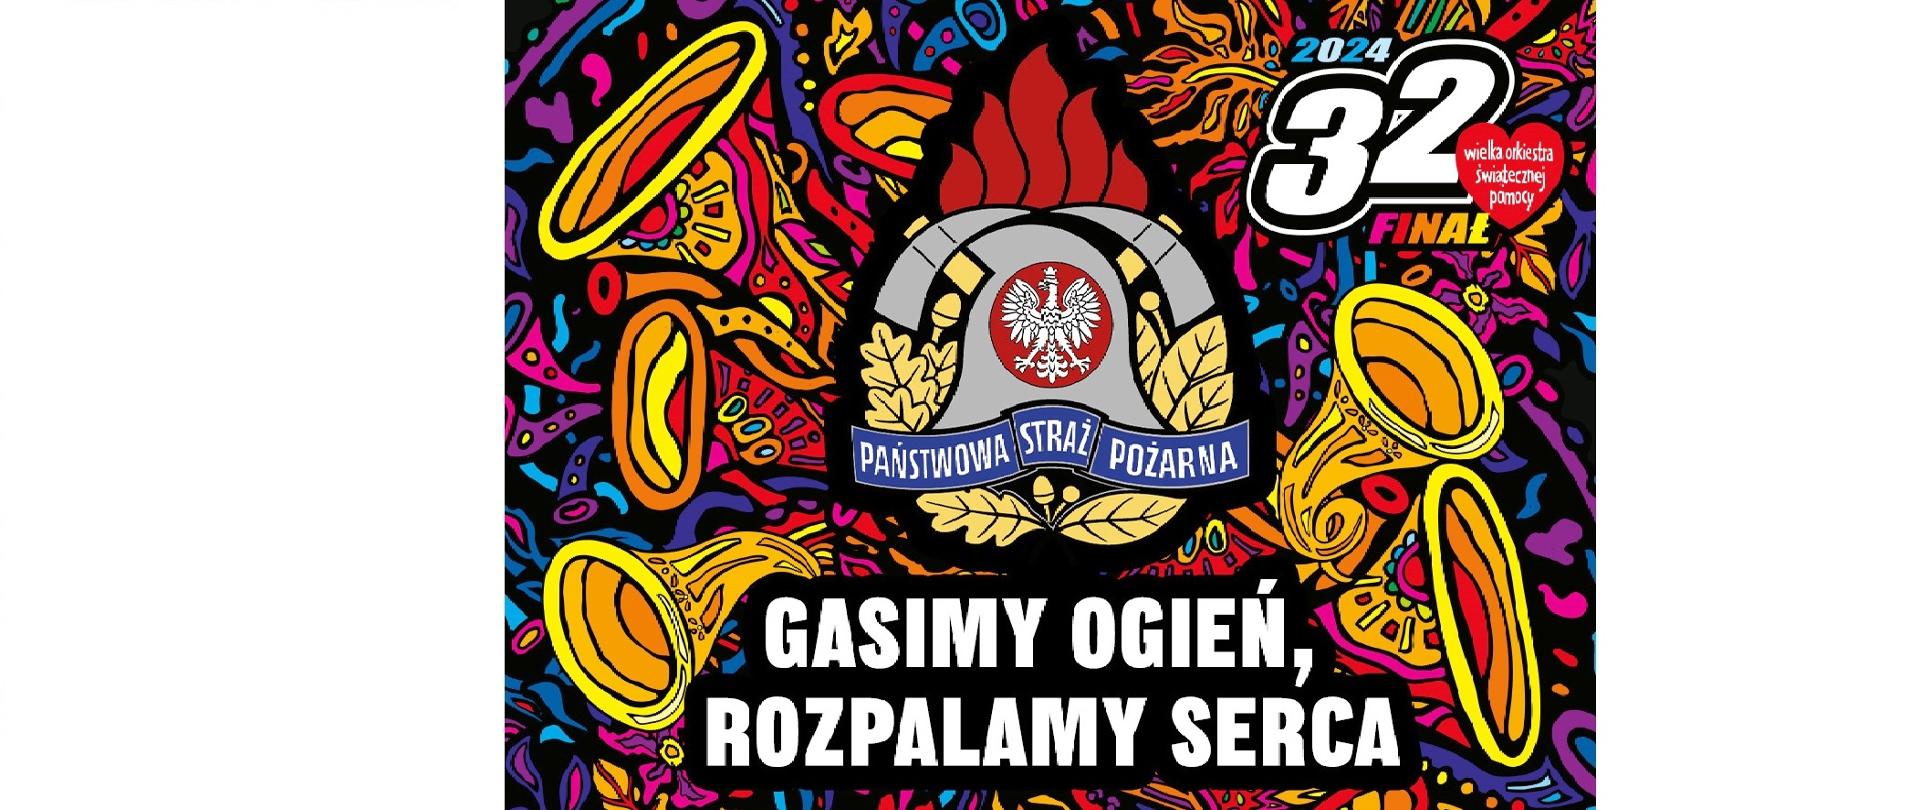 Fotografia przedstawia logo 32 finału WOŚP na rok 2024 wraz z logiem PSP i hasłem o treści Gasimy ogień, rozpalamy serca.